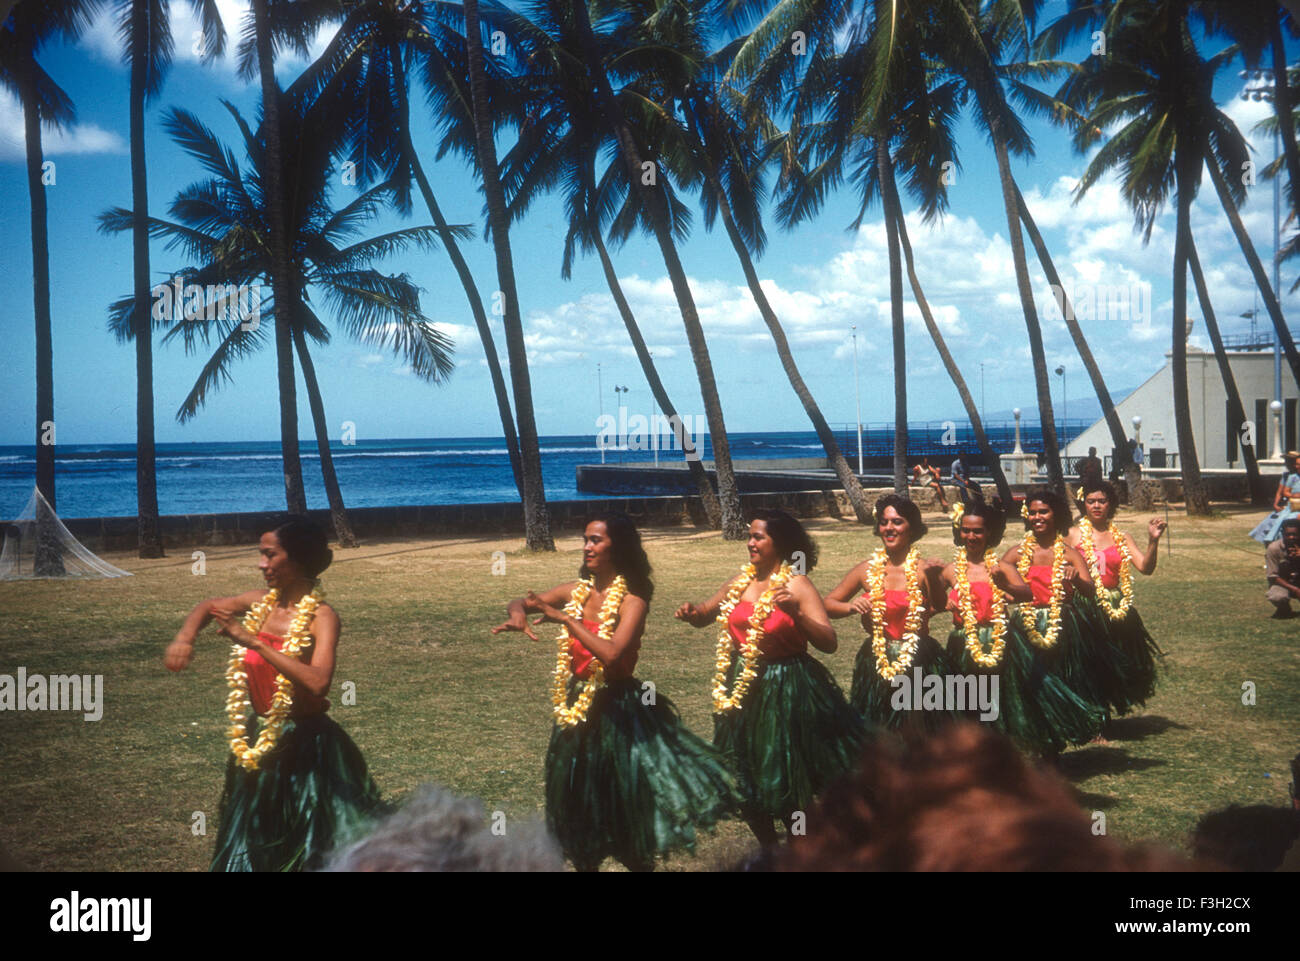 Les touristes fréquentent un luau à Hawaii pendant les années 50 avec divertissements Hawaïens. par une danse danseurs hula leis usure Banque D'Images